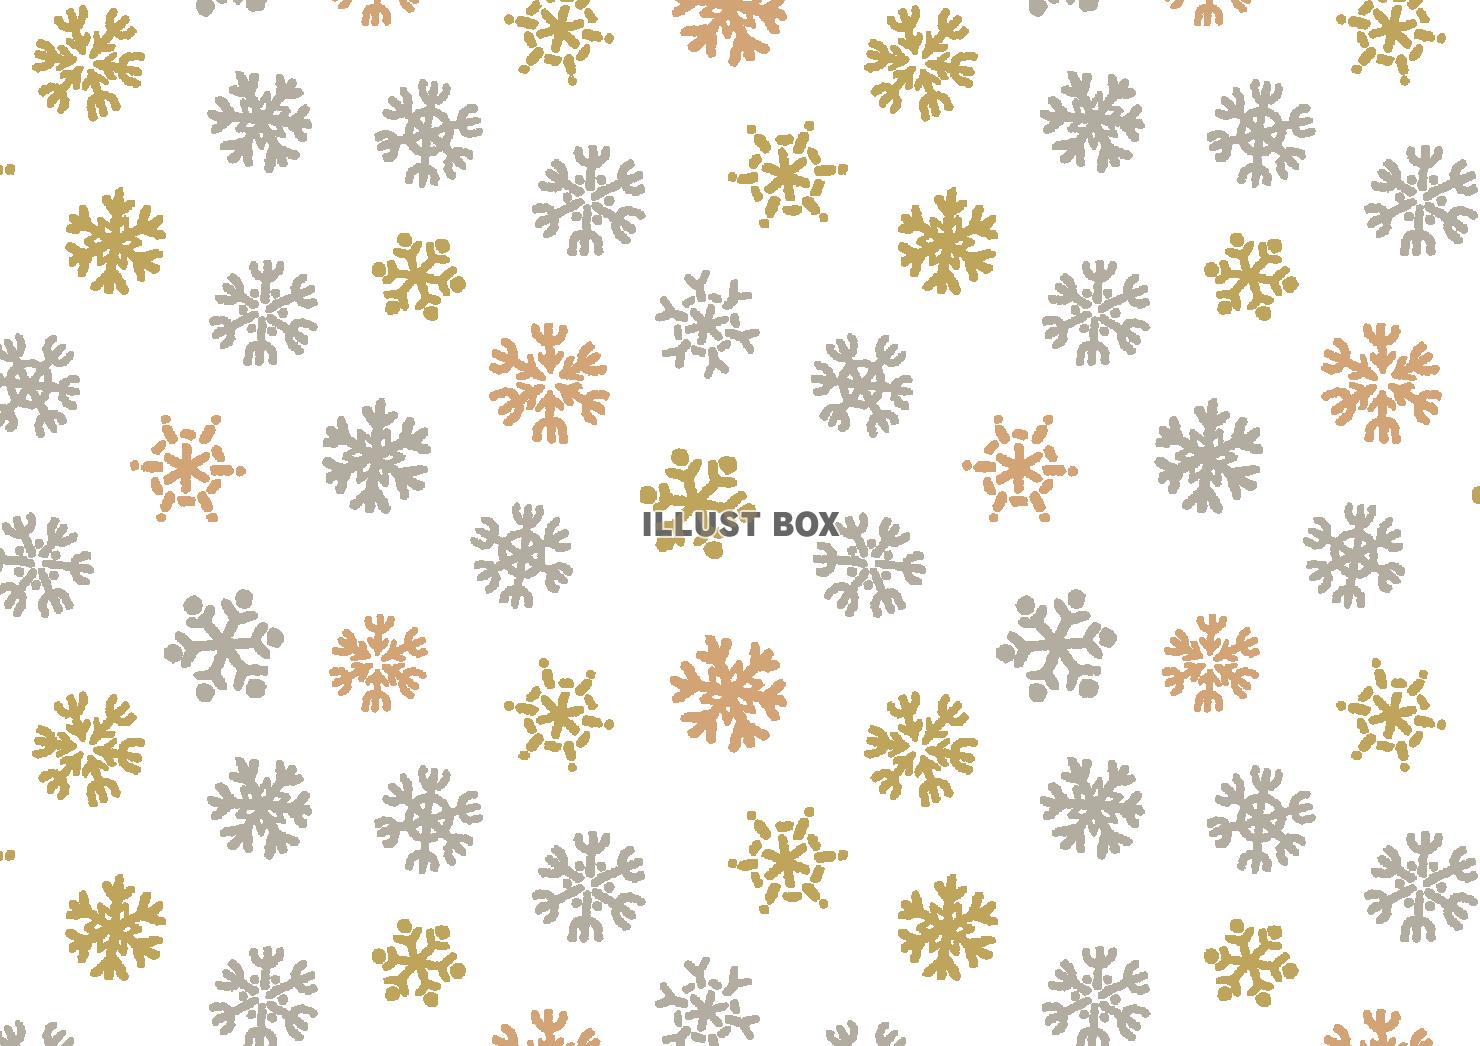 ゴールドシルバーカラーの雪の結晶パターン